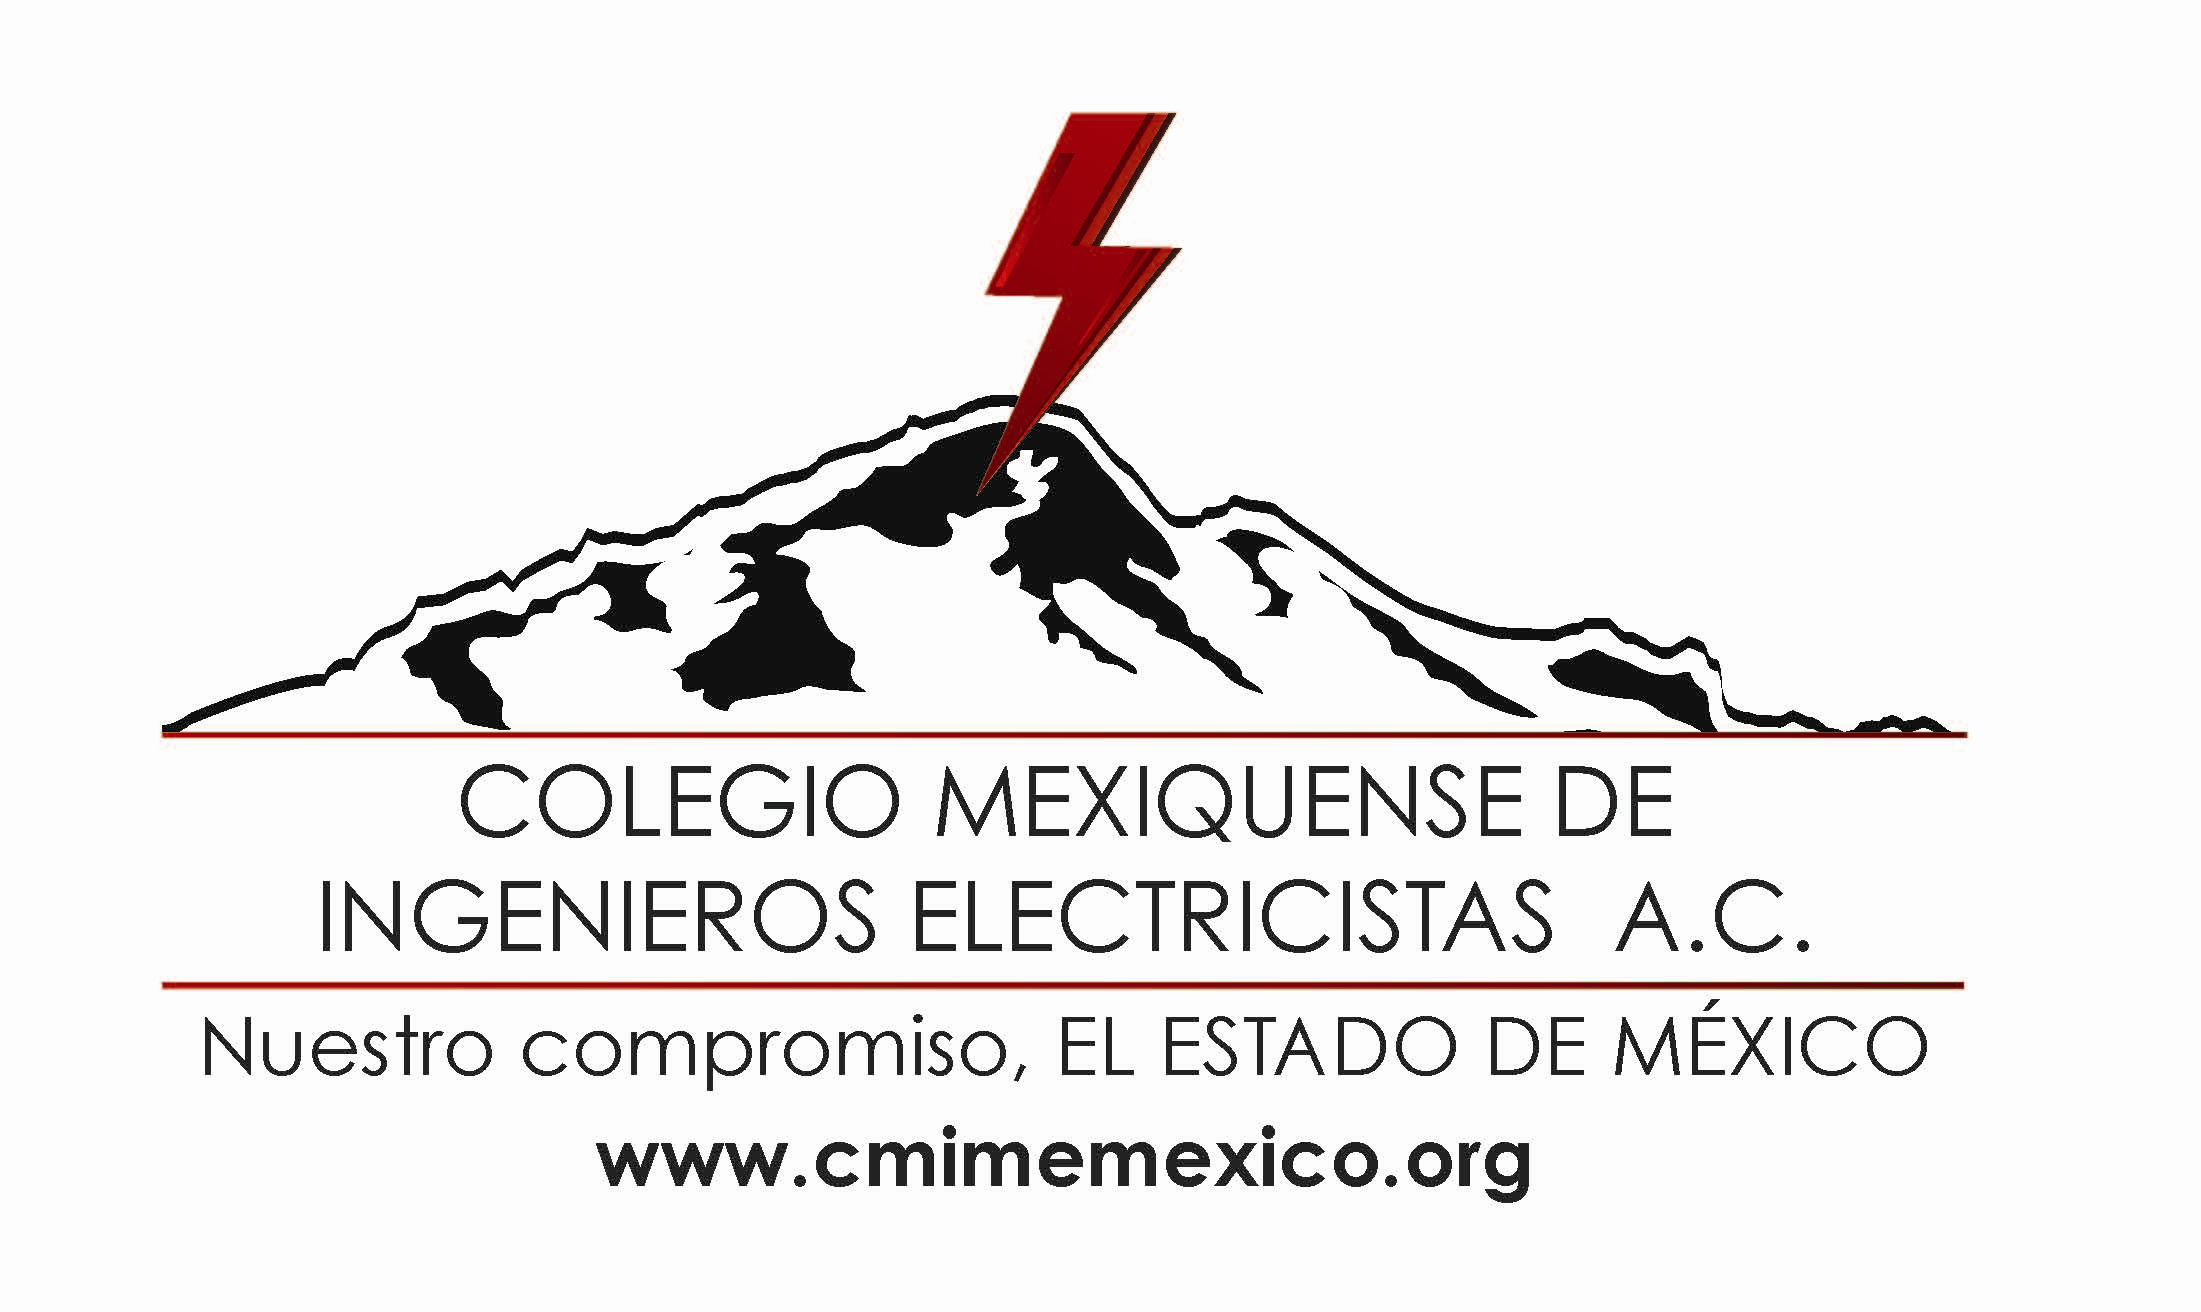 Colegio Mexiquense de Ingenieros Electricistas